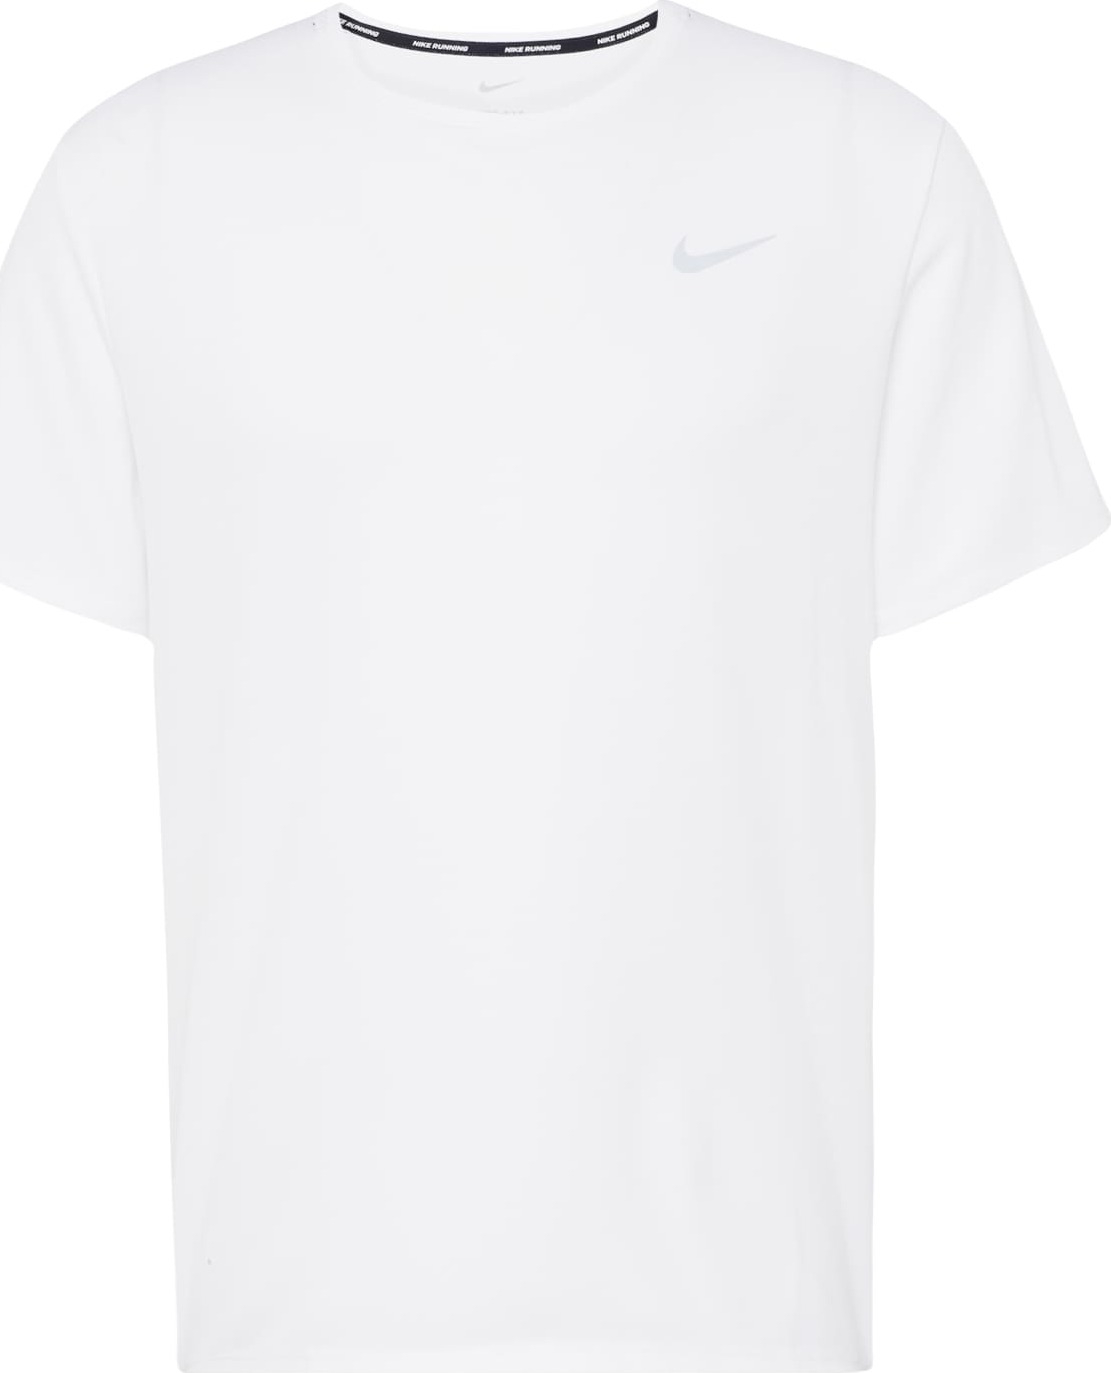 Funkční tričko Nike stříbrná / bílá